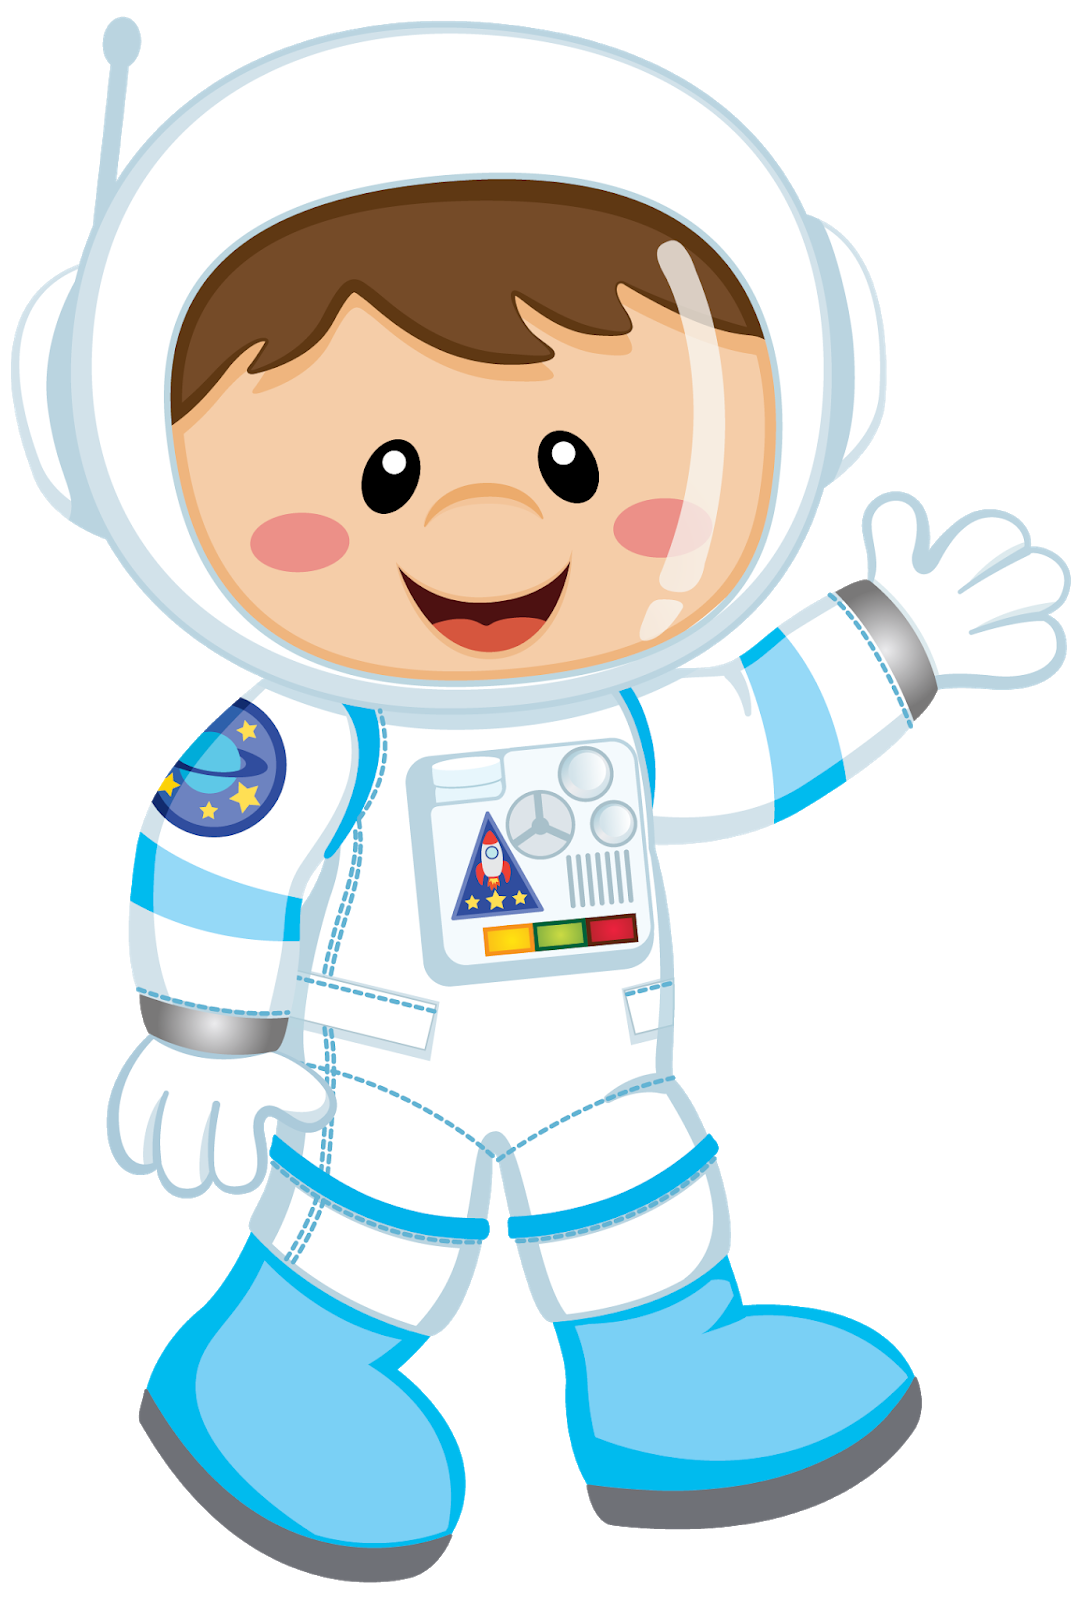 Космонавт картинки для детей дошкольного возраста. Иллюстрация скафандра для детей. Космонавт для детей. Человечки в скафандрах. Космонавт мультяшный.